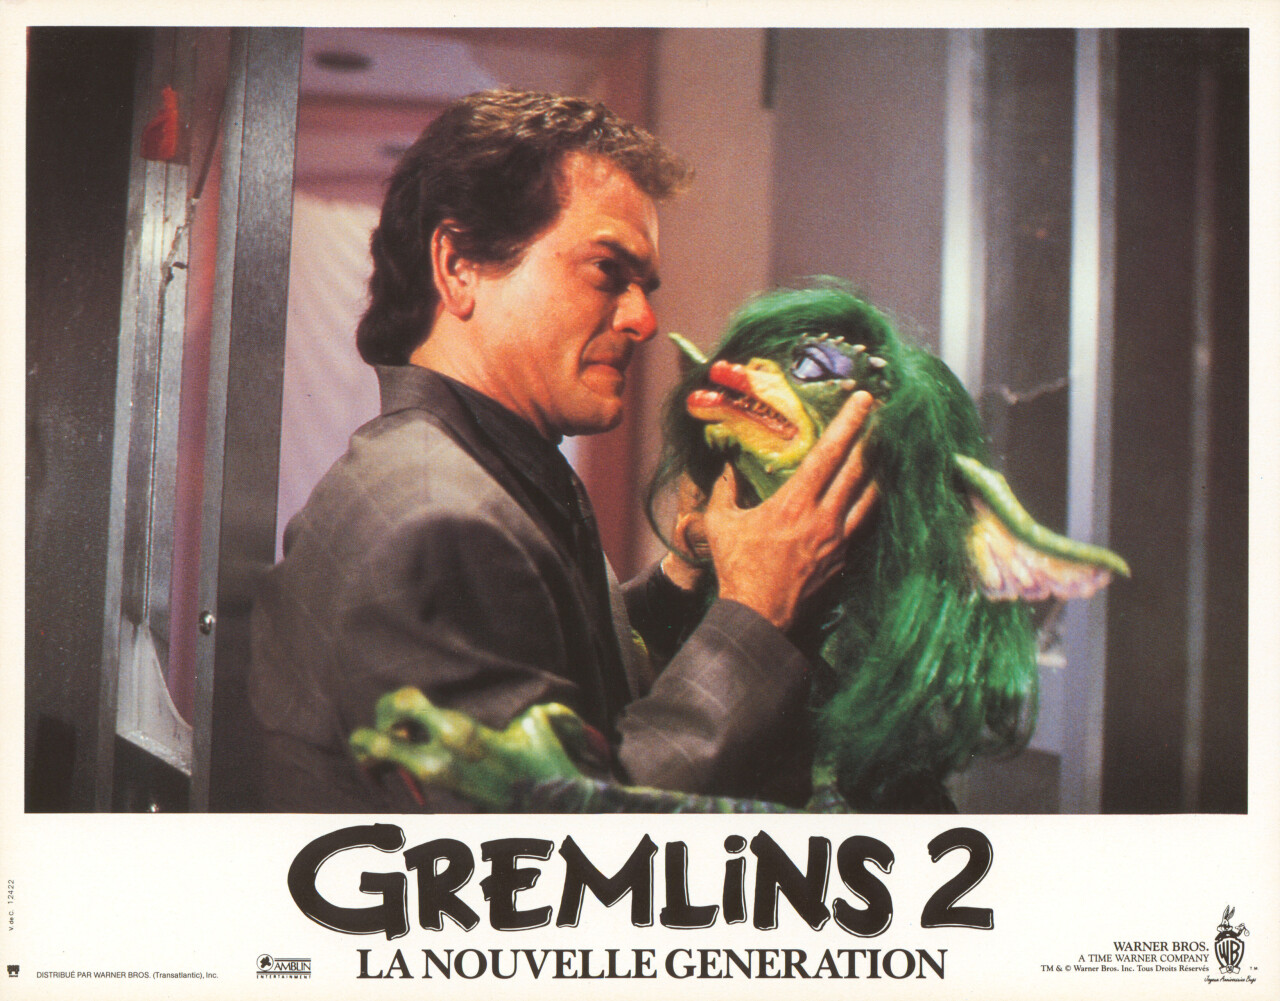 Гремлины 2: Новенькая партия (Gremlins 2 The New Batch, 1990), режиссёр Джо Данте, французский постер к фильму (ужасы, 1990 год) (7)